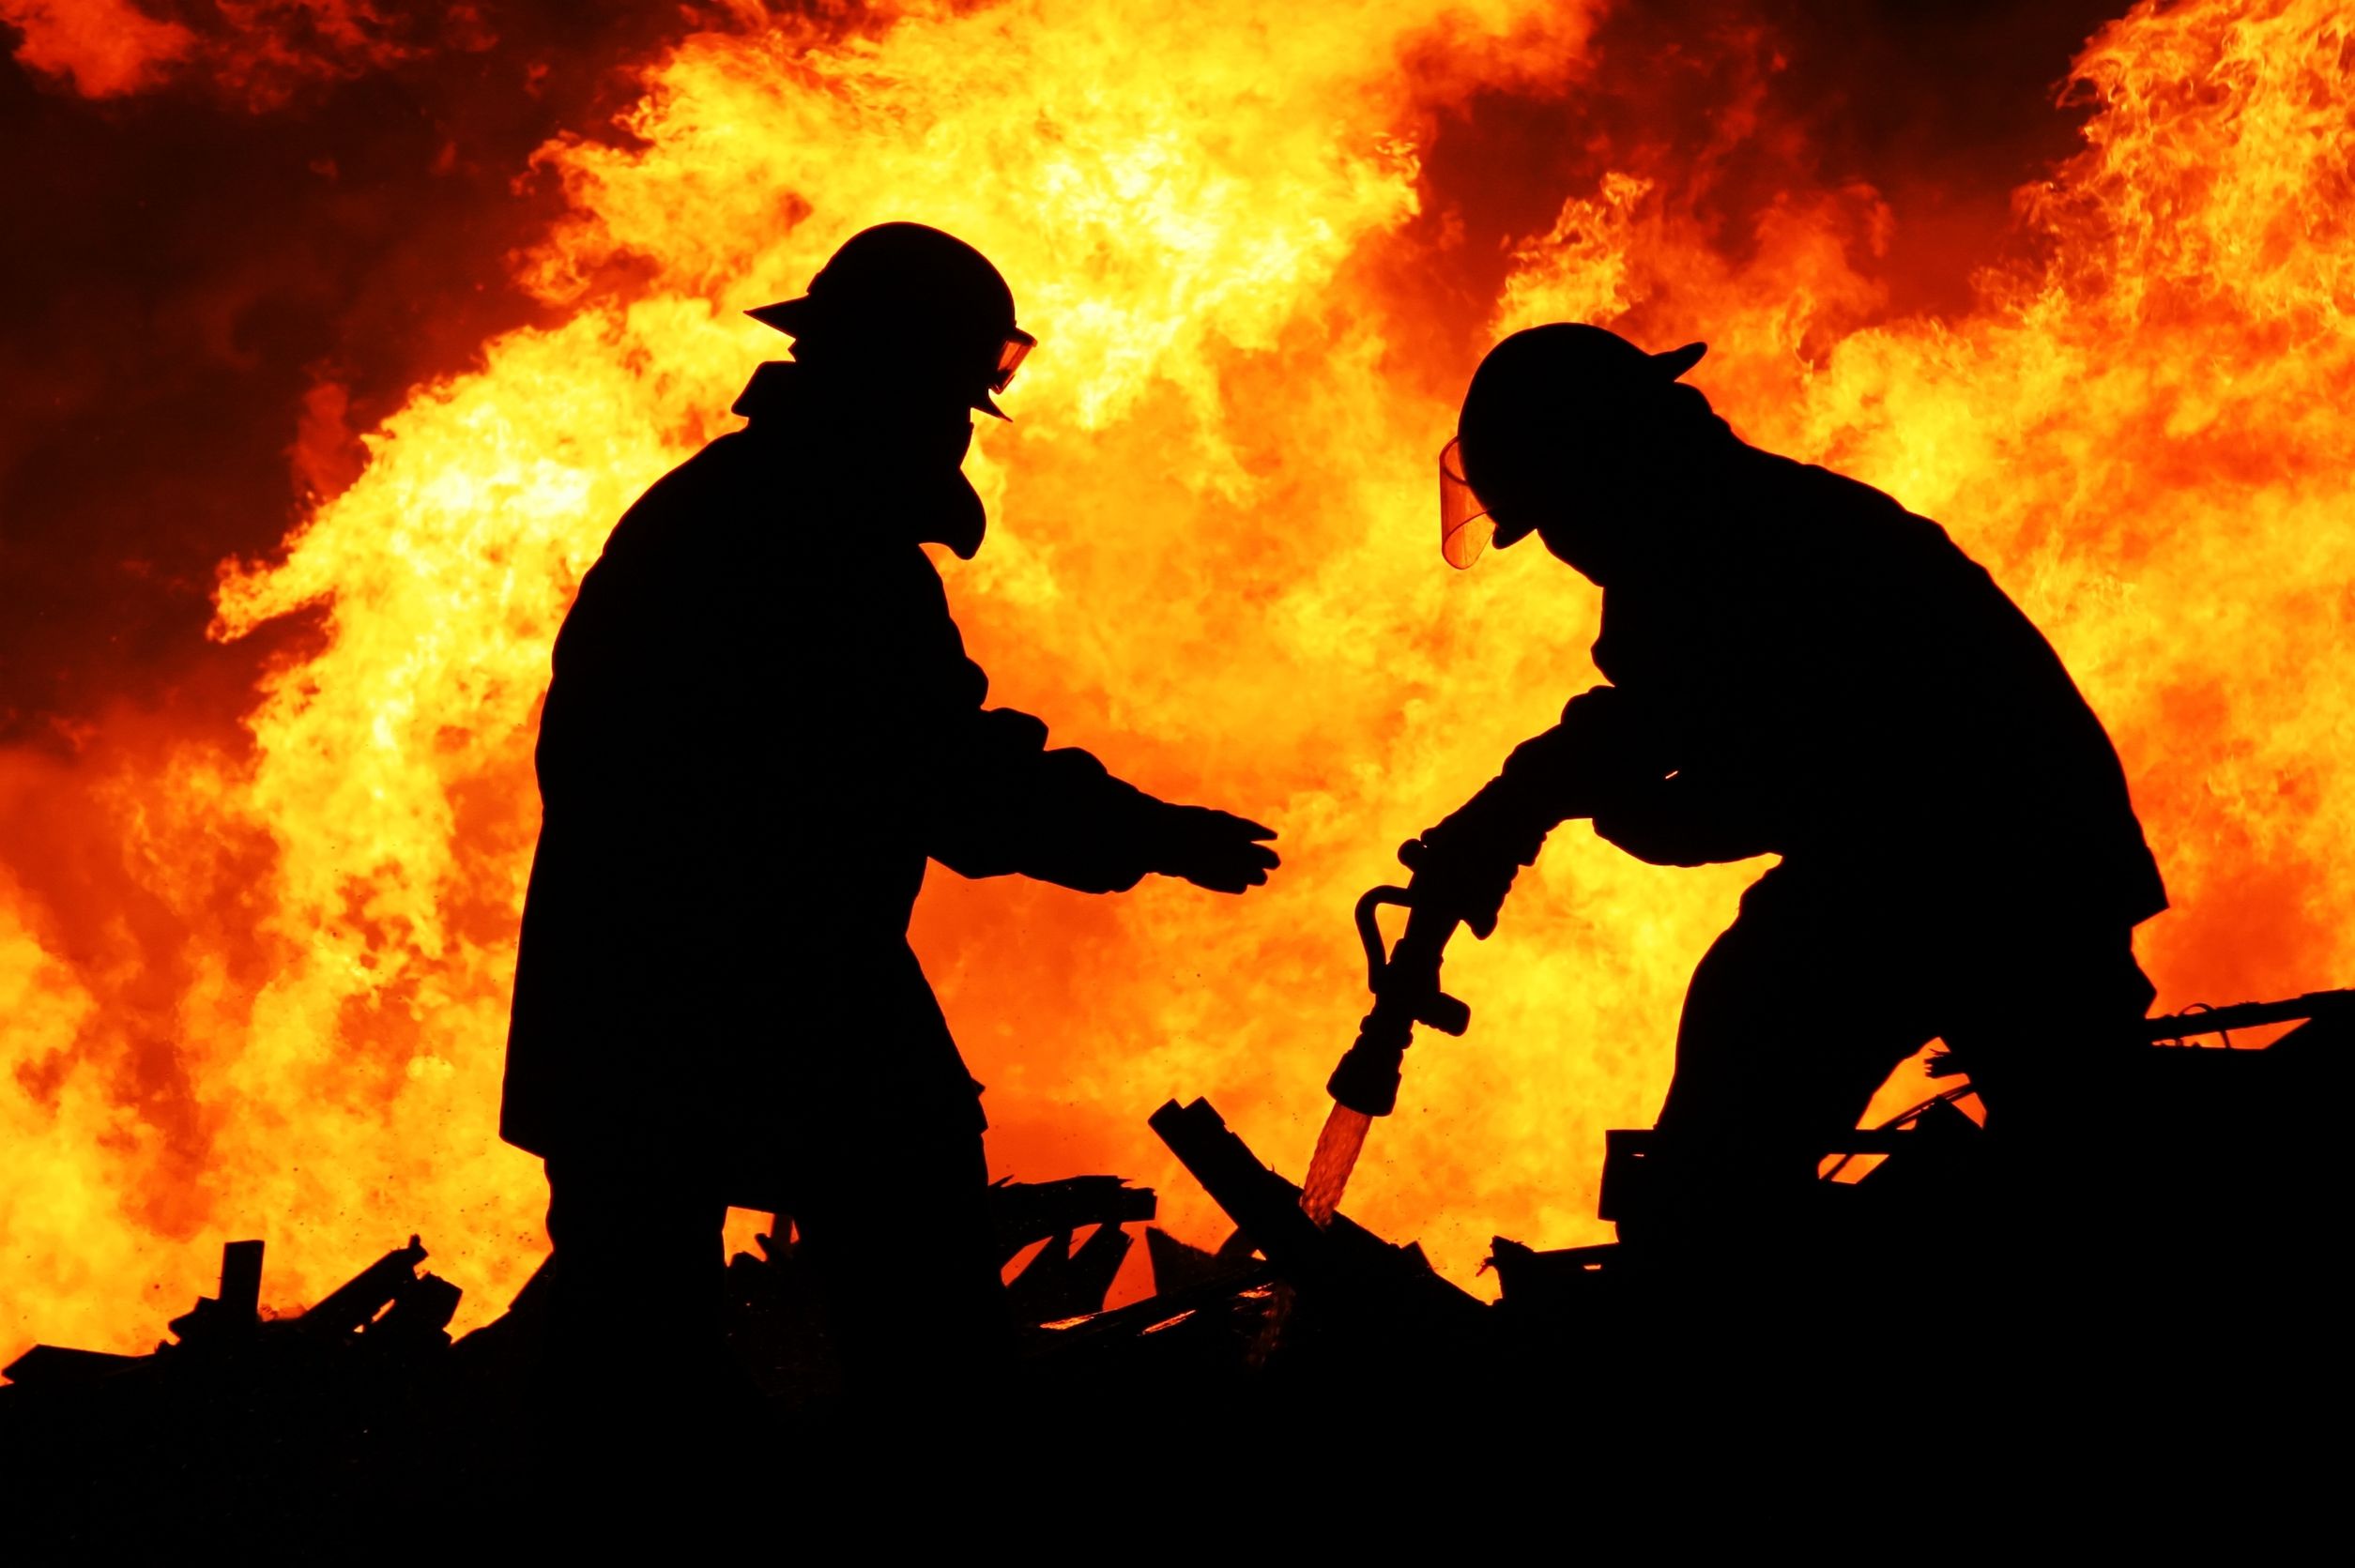 Firemen fighting a fire